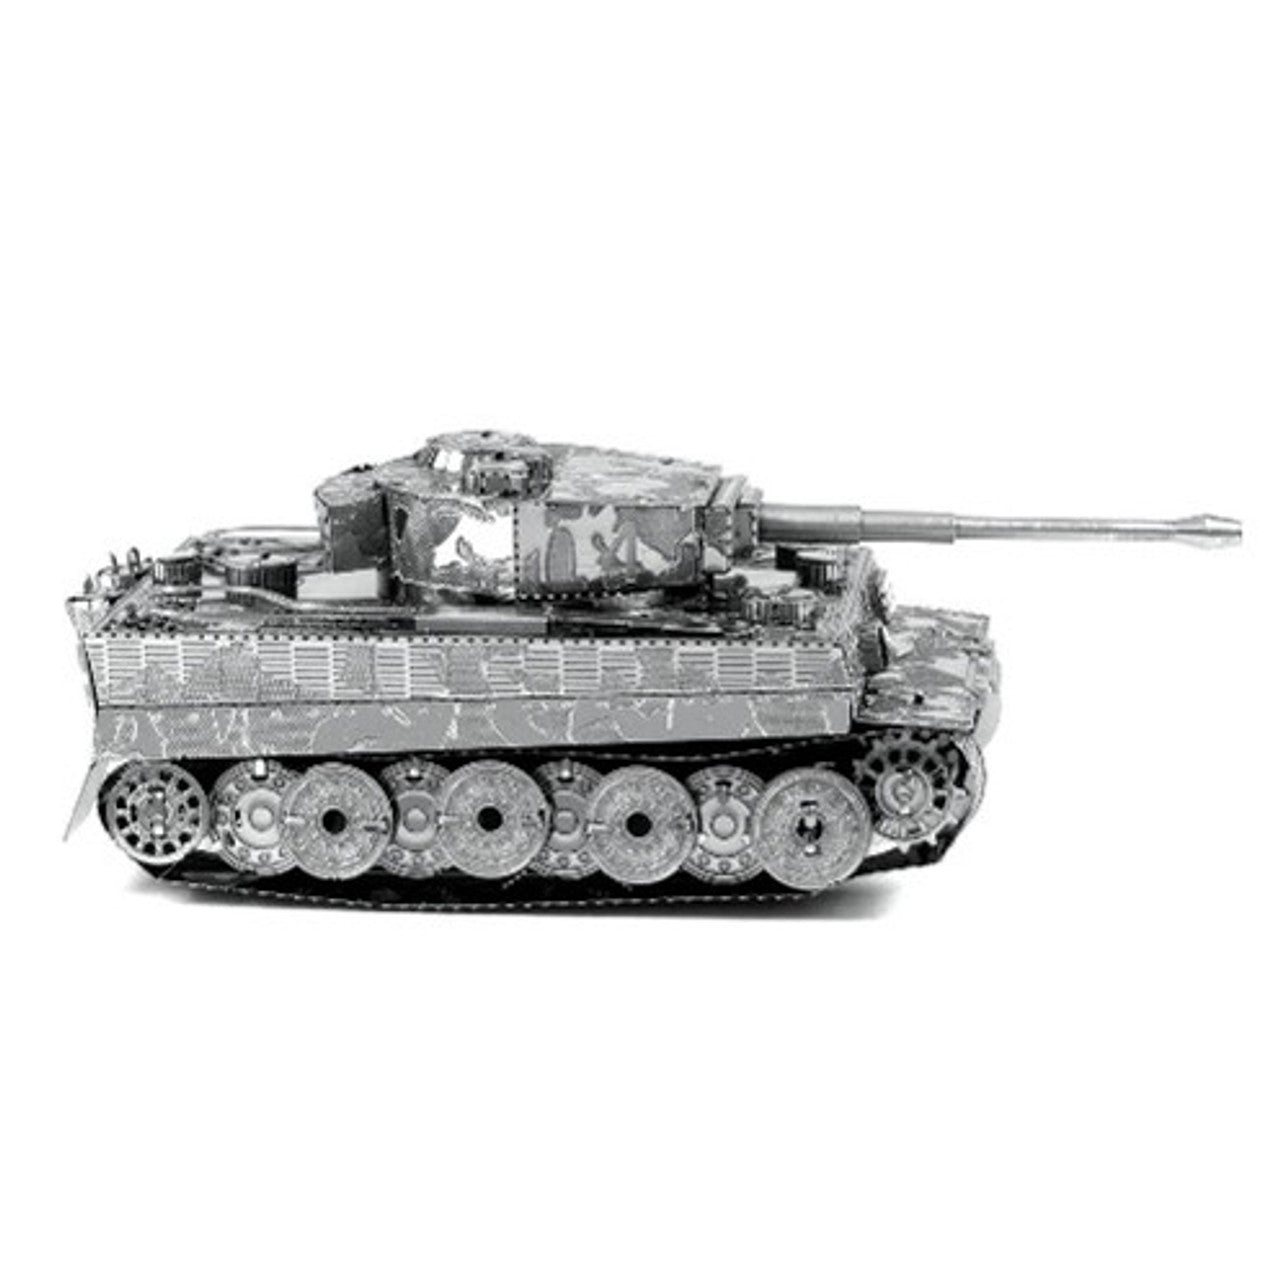 Metal Earth Tiger 1 Tank